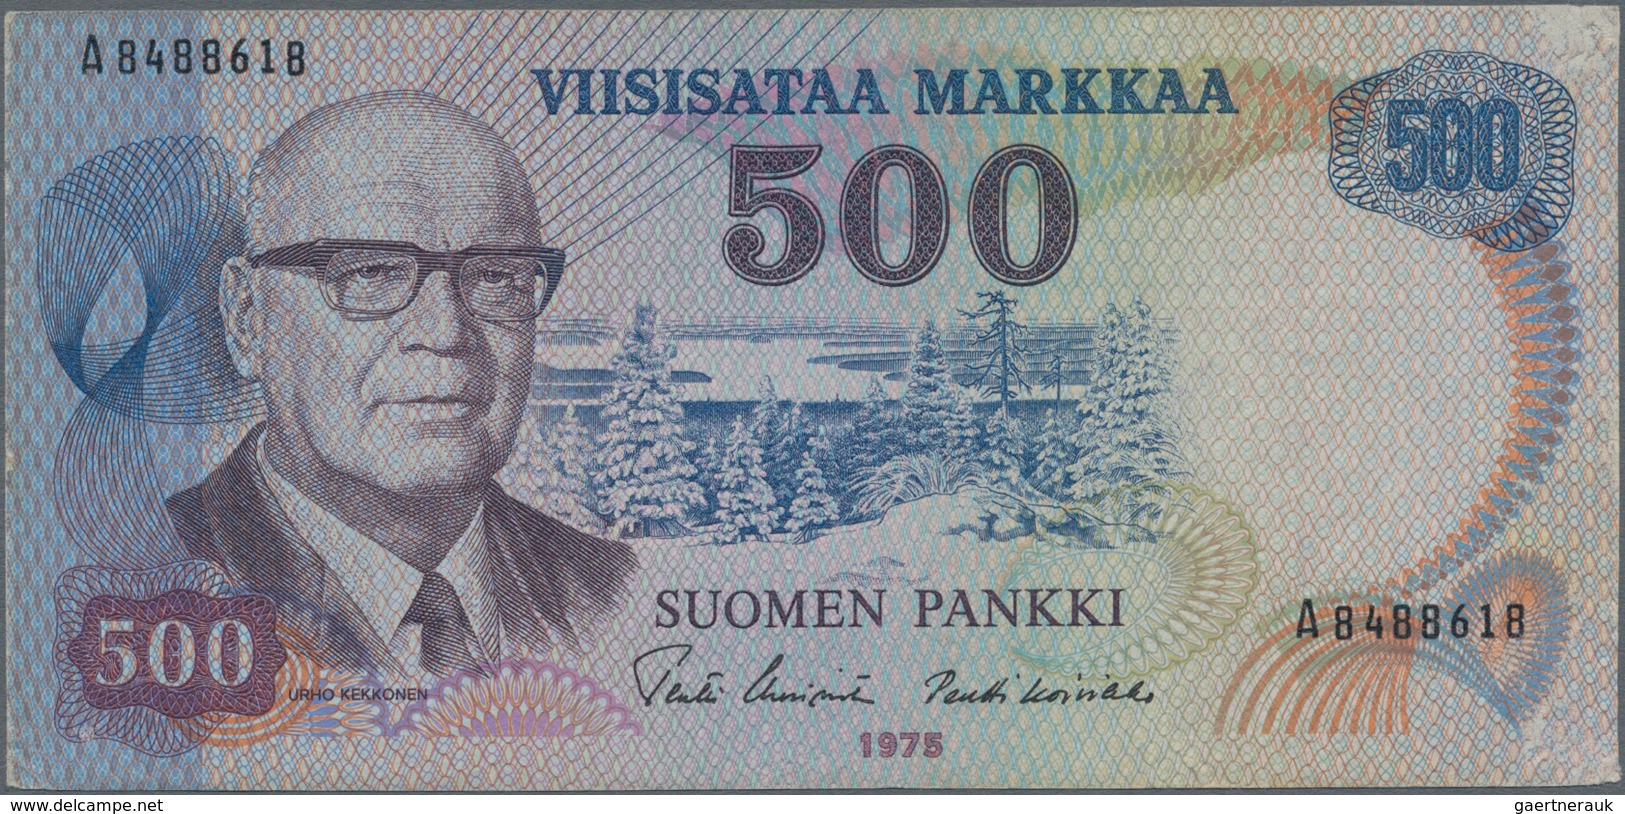 Finland / Finnland: Pair With 100 Markkaa 1945 Litt.B, P.88 (VF) And 500 Markkaa 1975 P.110 (VF). (2 - Finlandia